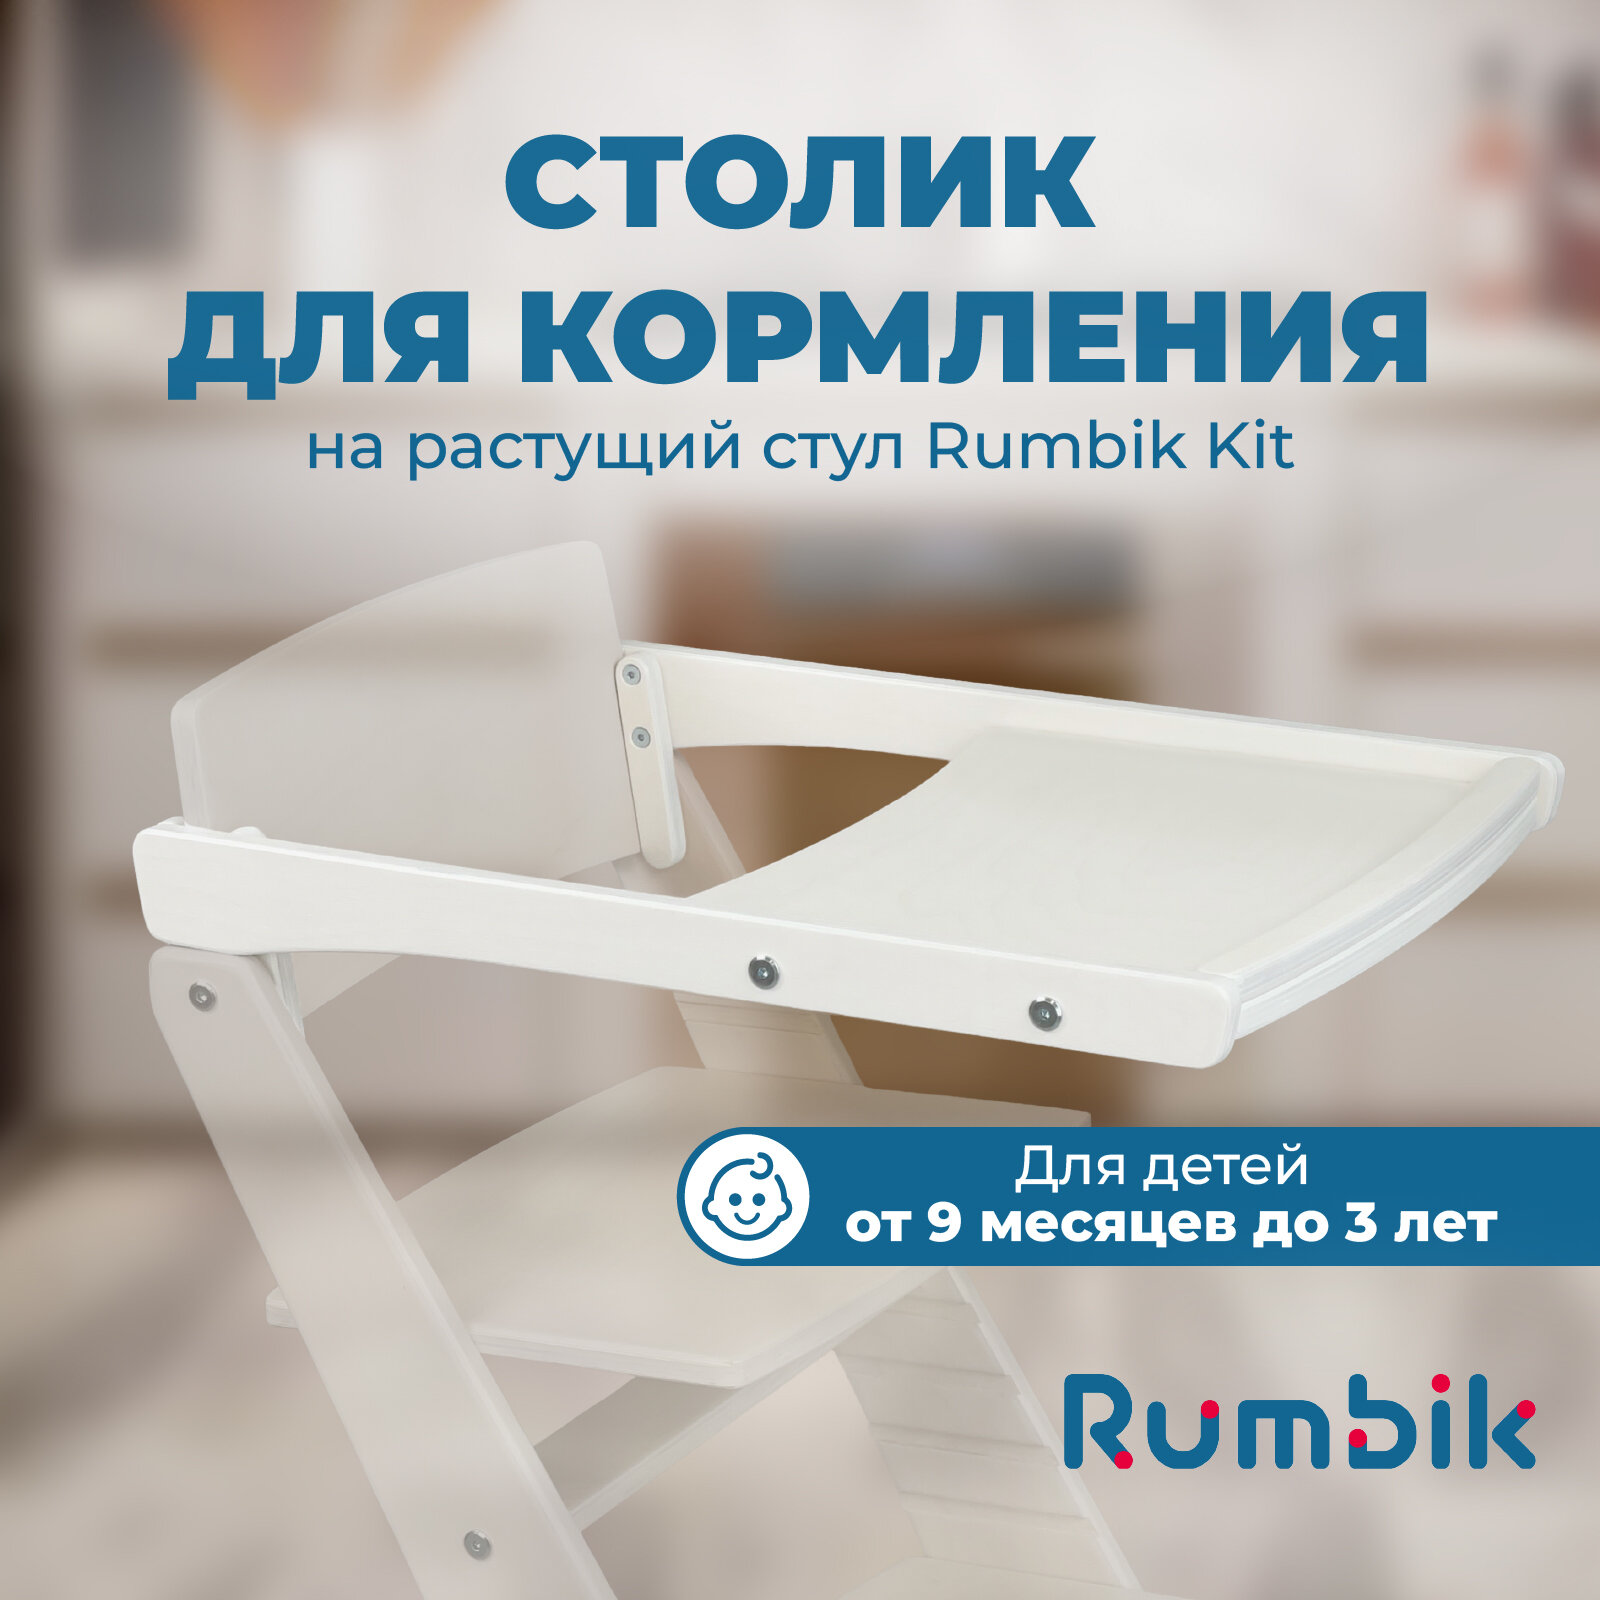 Столик для кормления к растущему стулу Rumbik Kit, белый, съёмный, деревянный